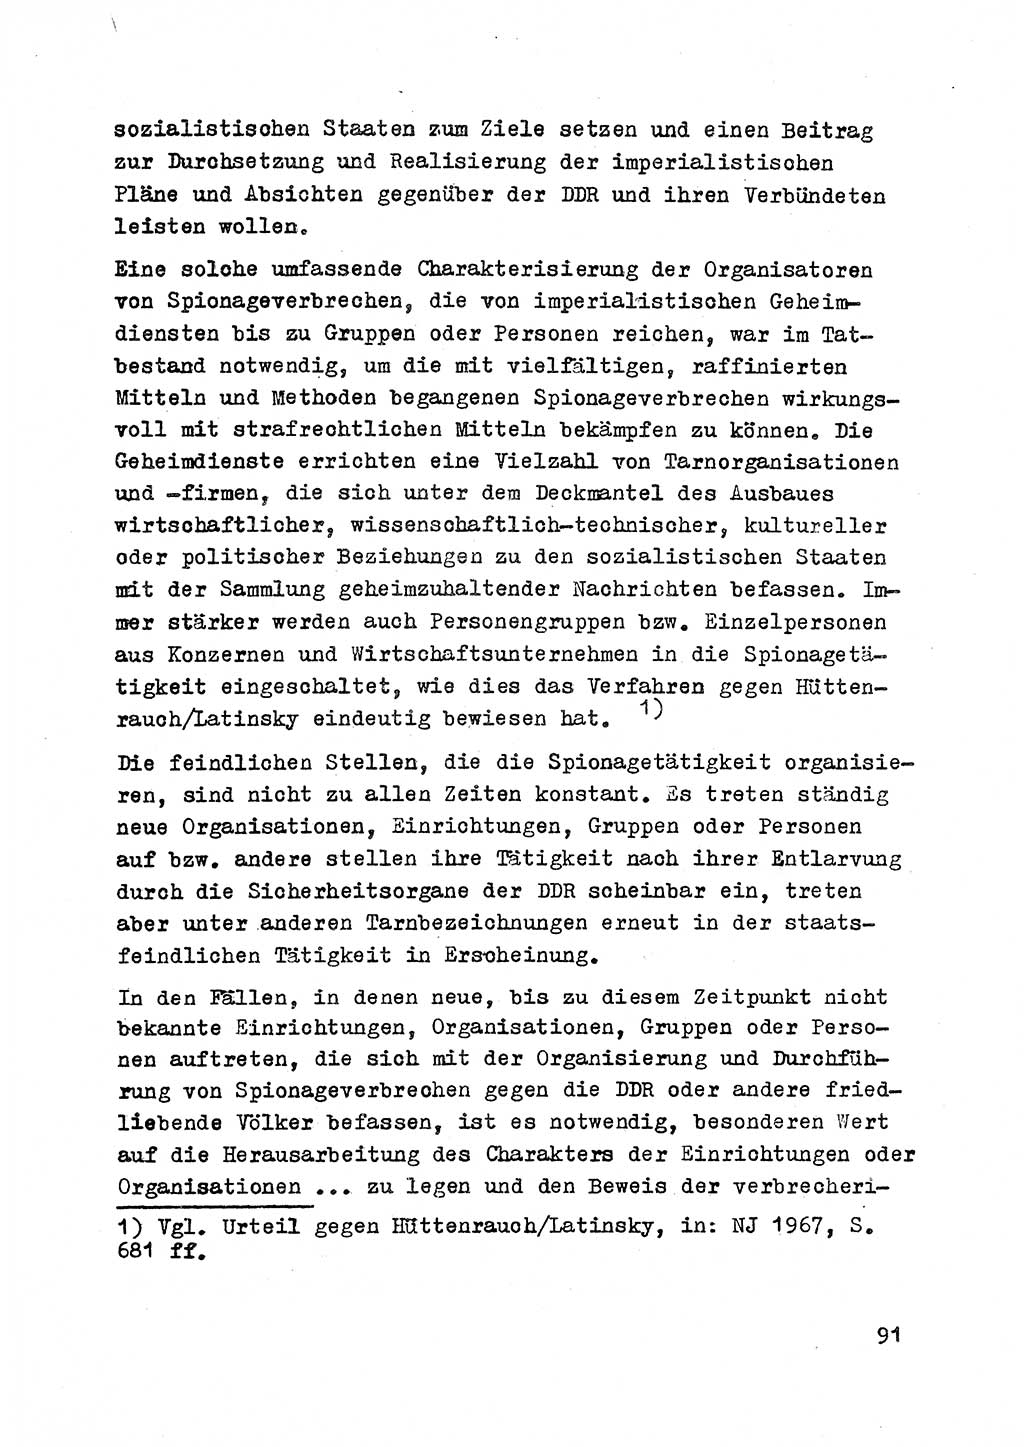 Strafrecht der DDR (Deutsche Demokratische Republik), Besonderer Teil, Lehrmaterial, Heft 2 1969, Seite 91 (Strafr. DDR BT Lehrmat. H. 2 1969, S. 91)